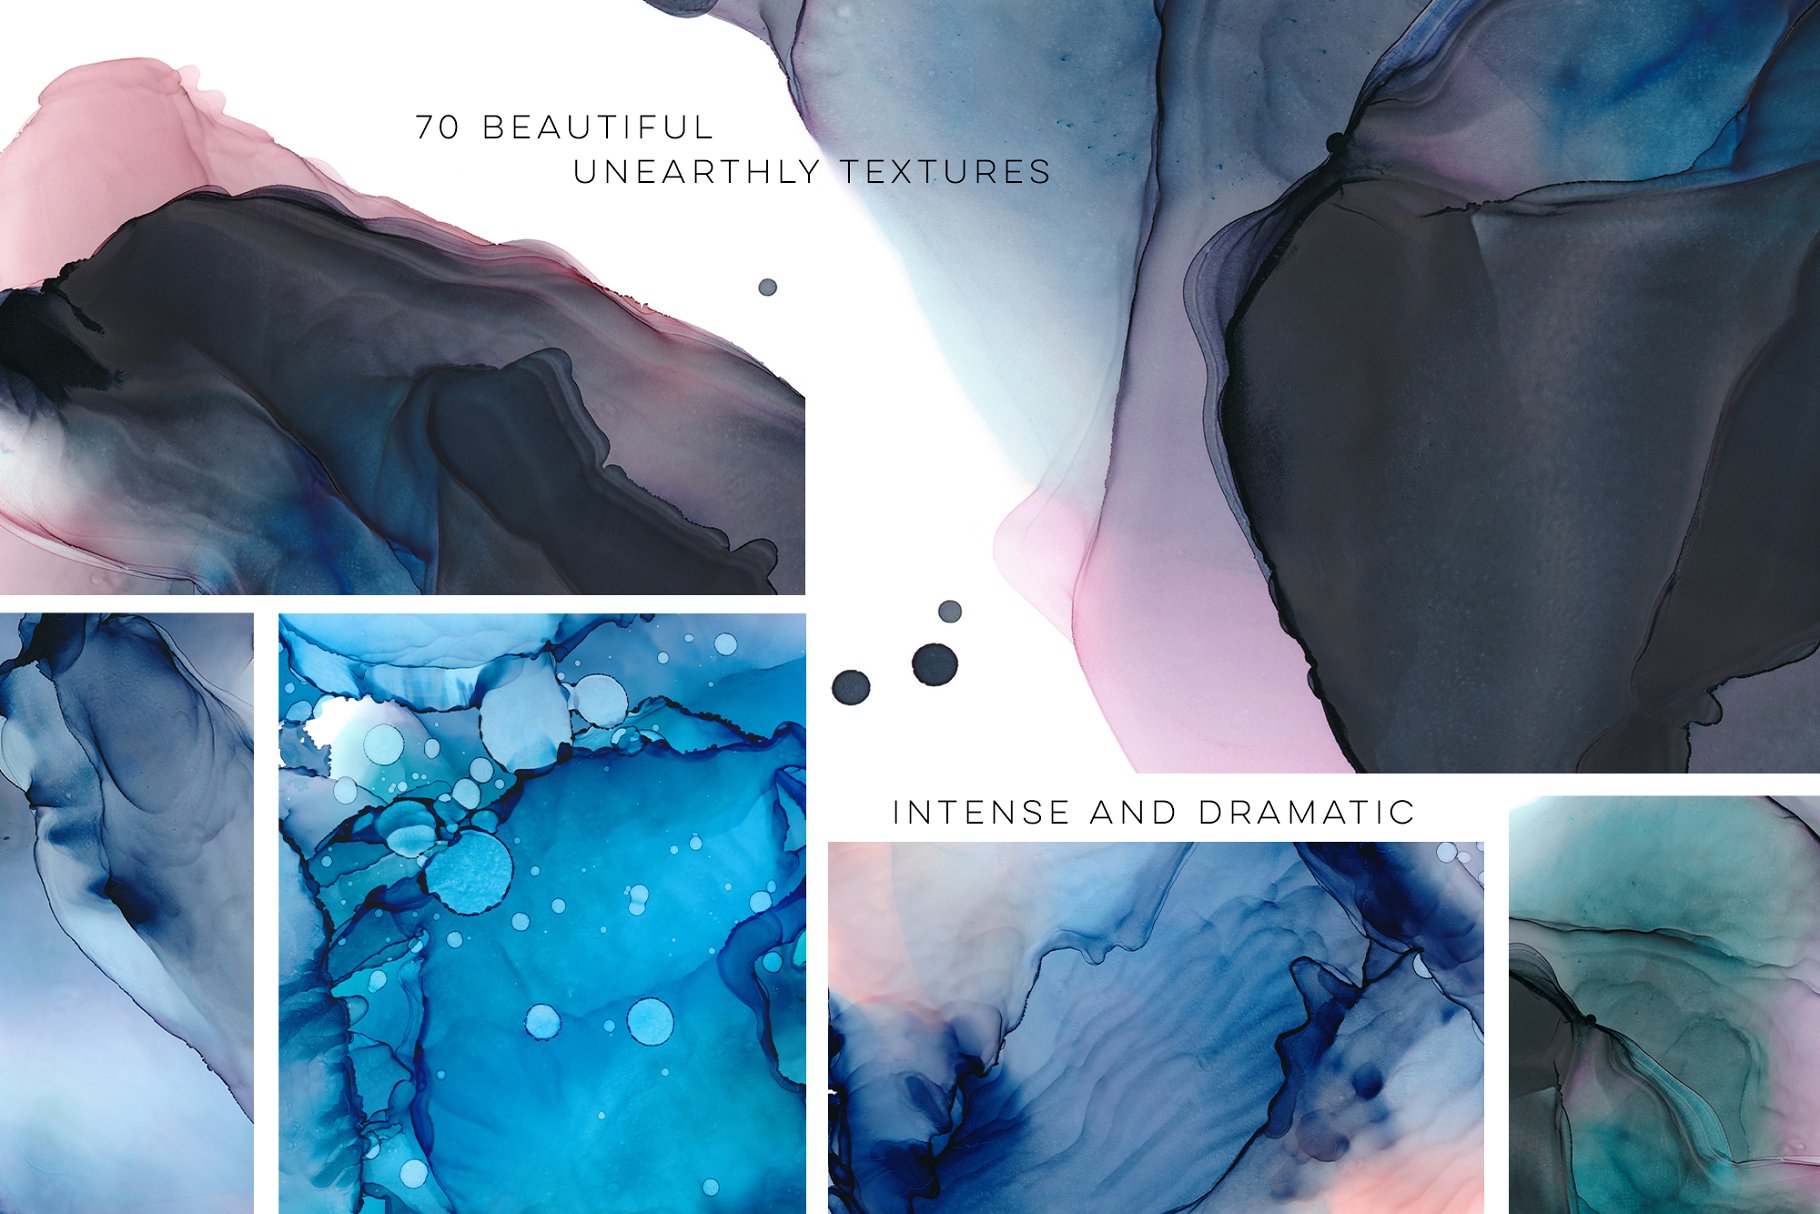 如漂浮的云朵墨水纹理合集 Ethereal Ink Texture Collection插图(2)